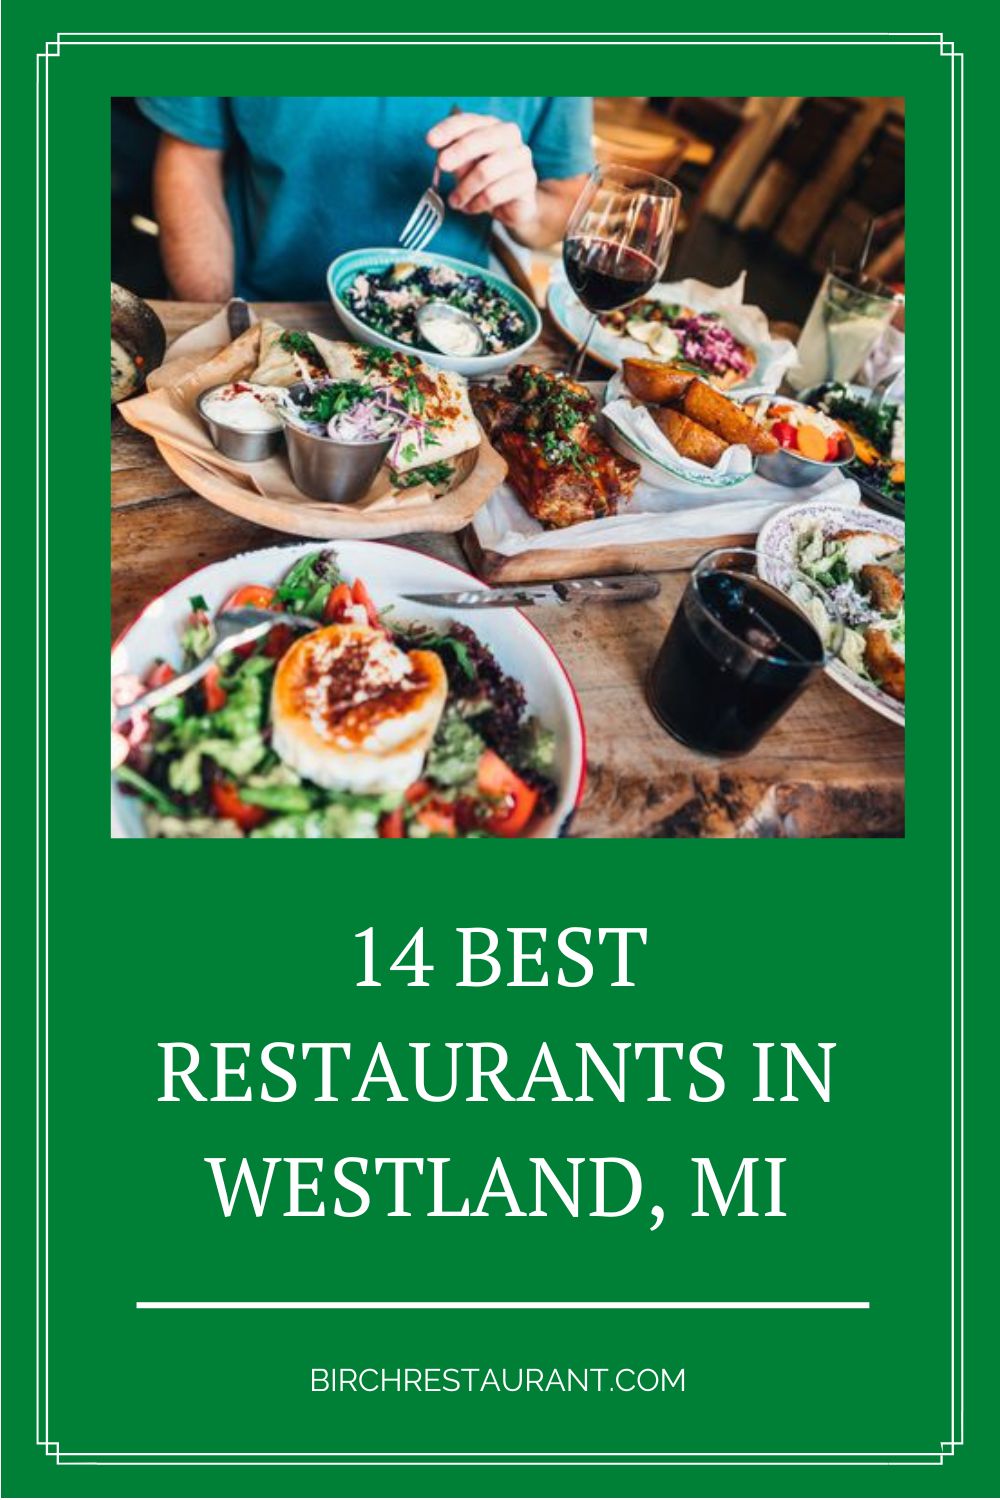 Best Restaurants in Westland